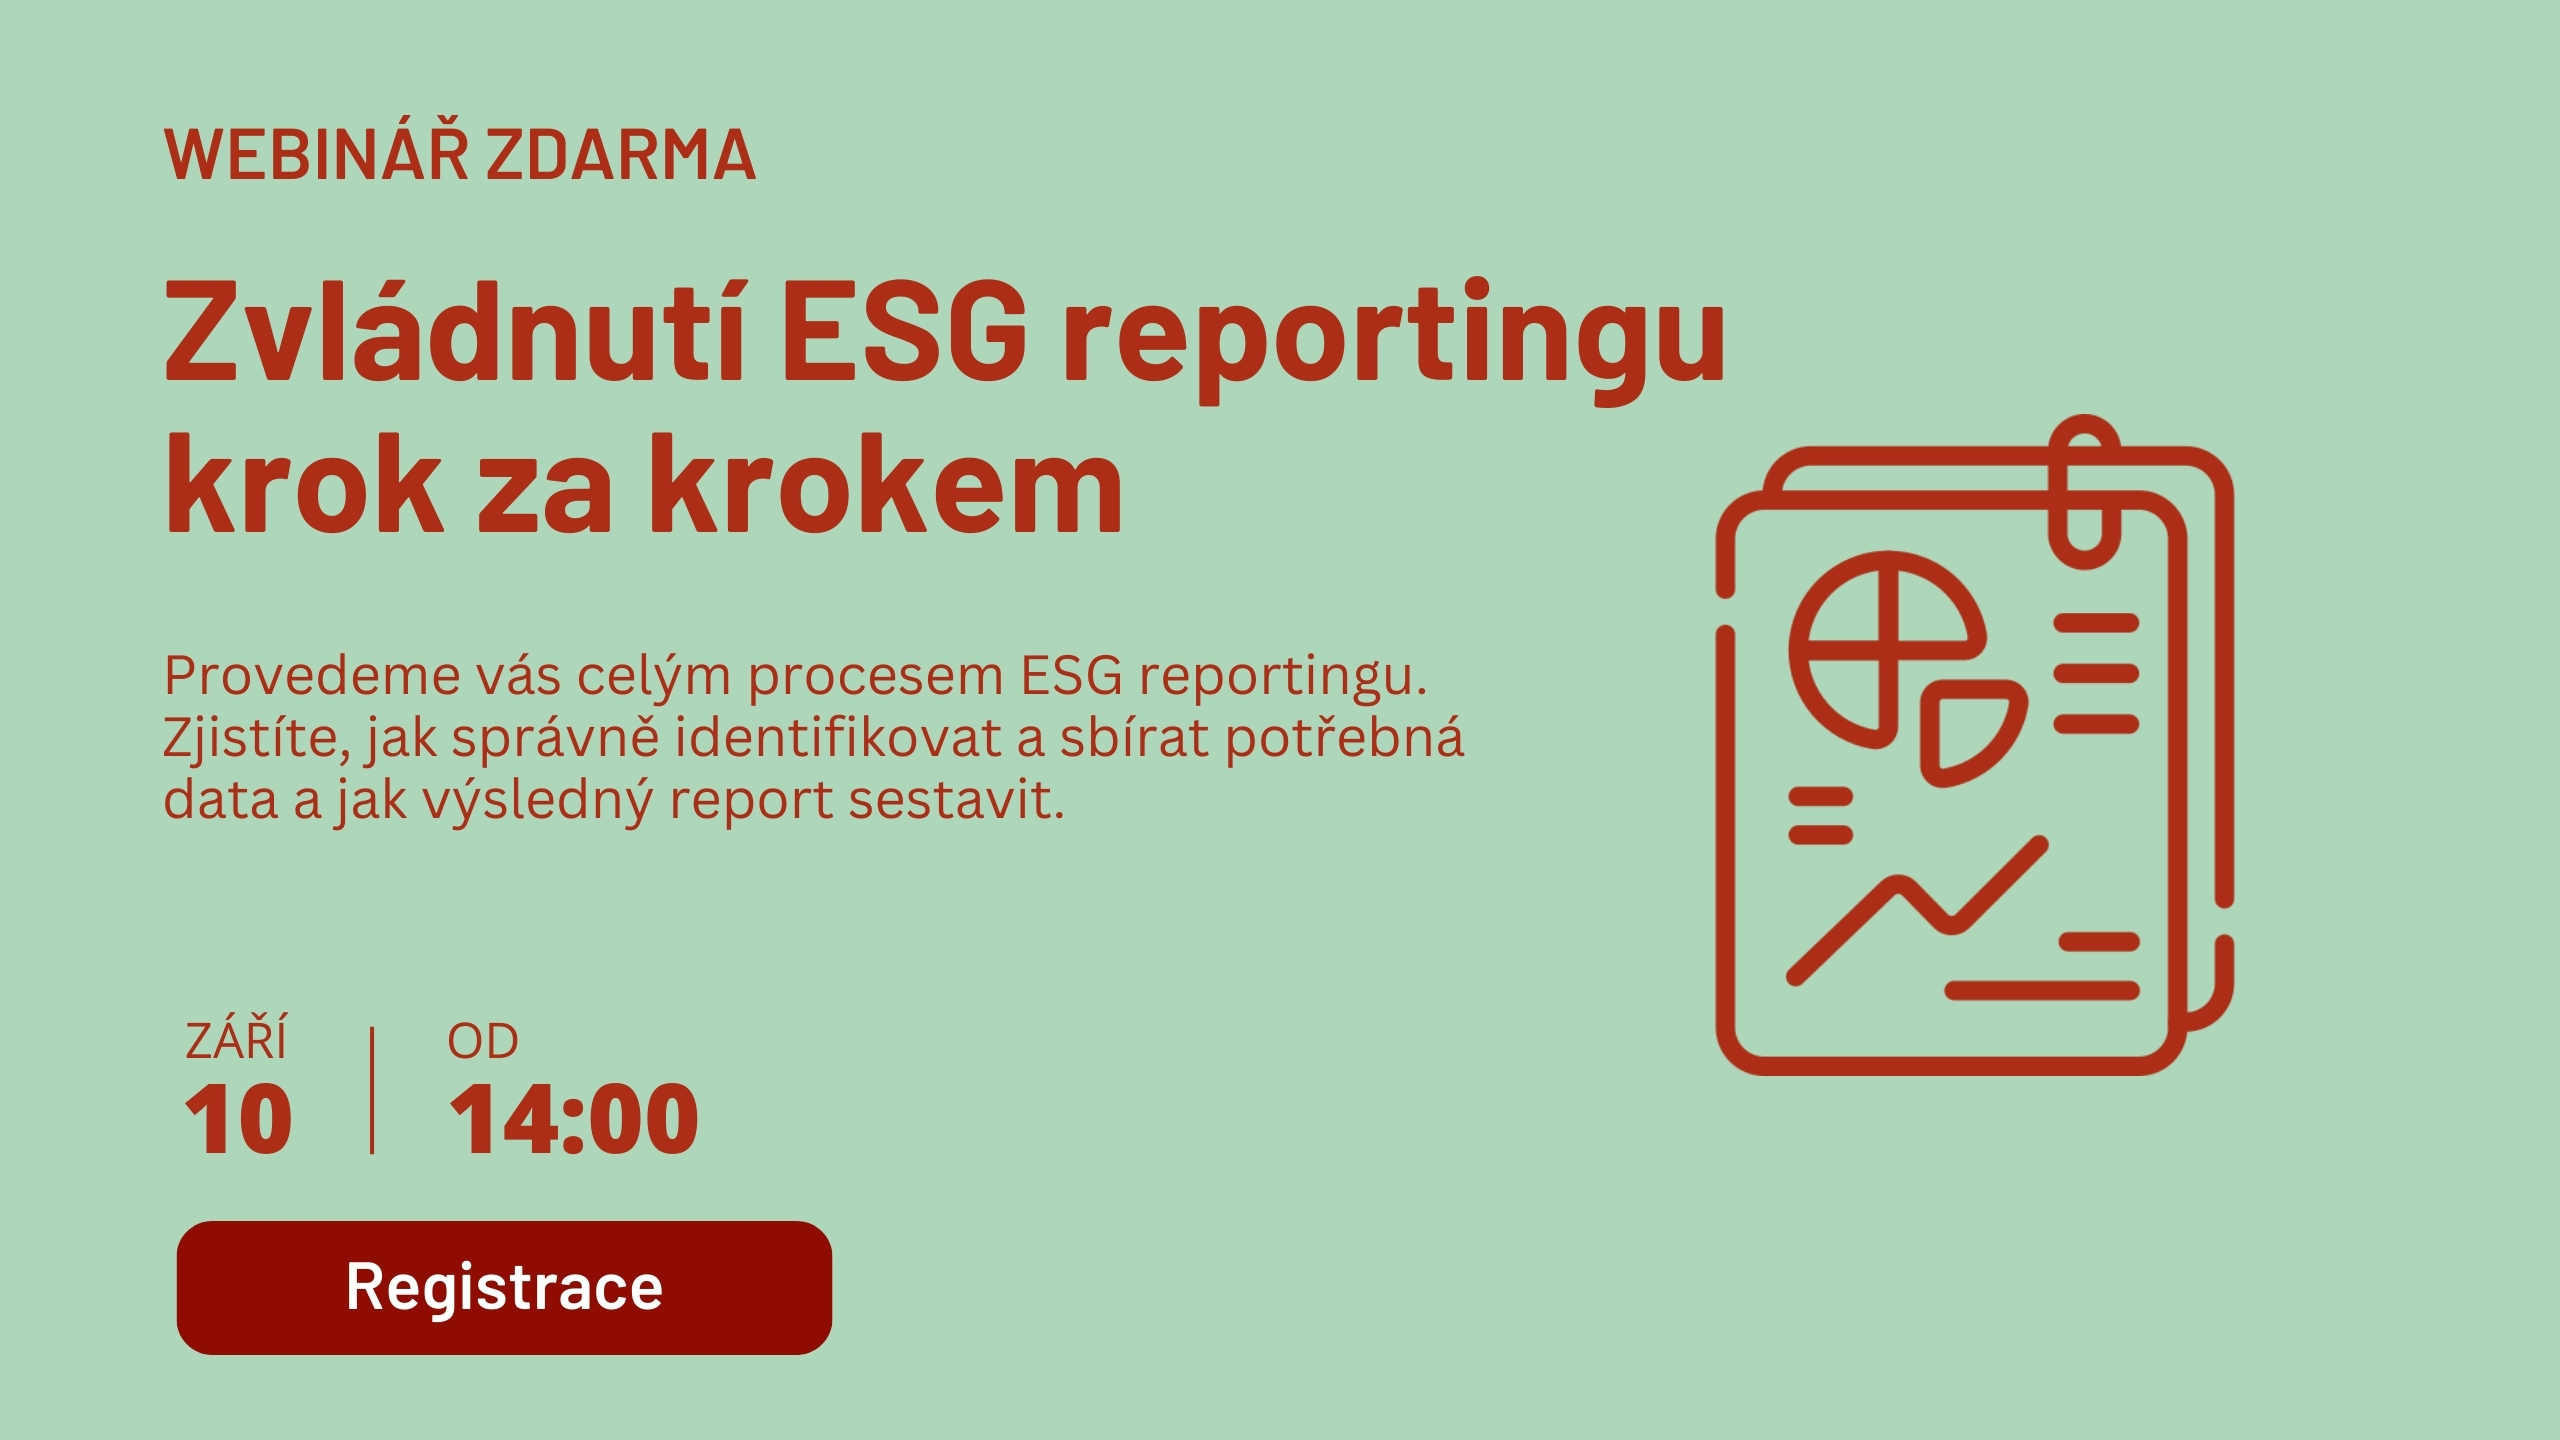 Zvladnuti_ESG_reportingu_krok_za_krokem.jpg